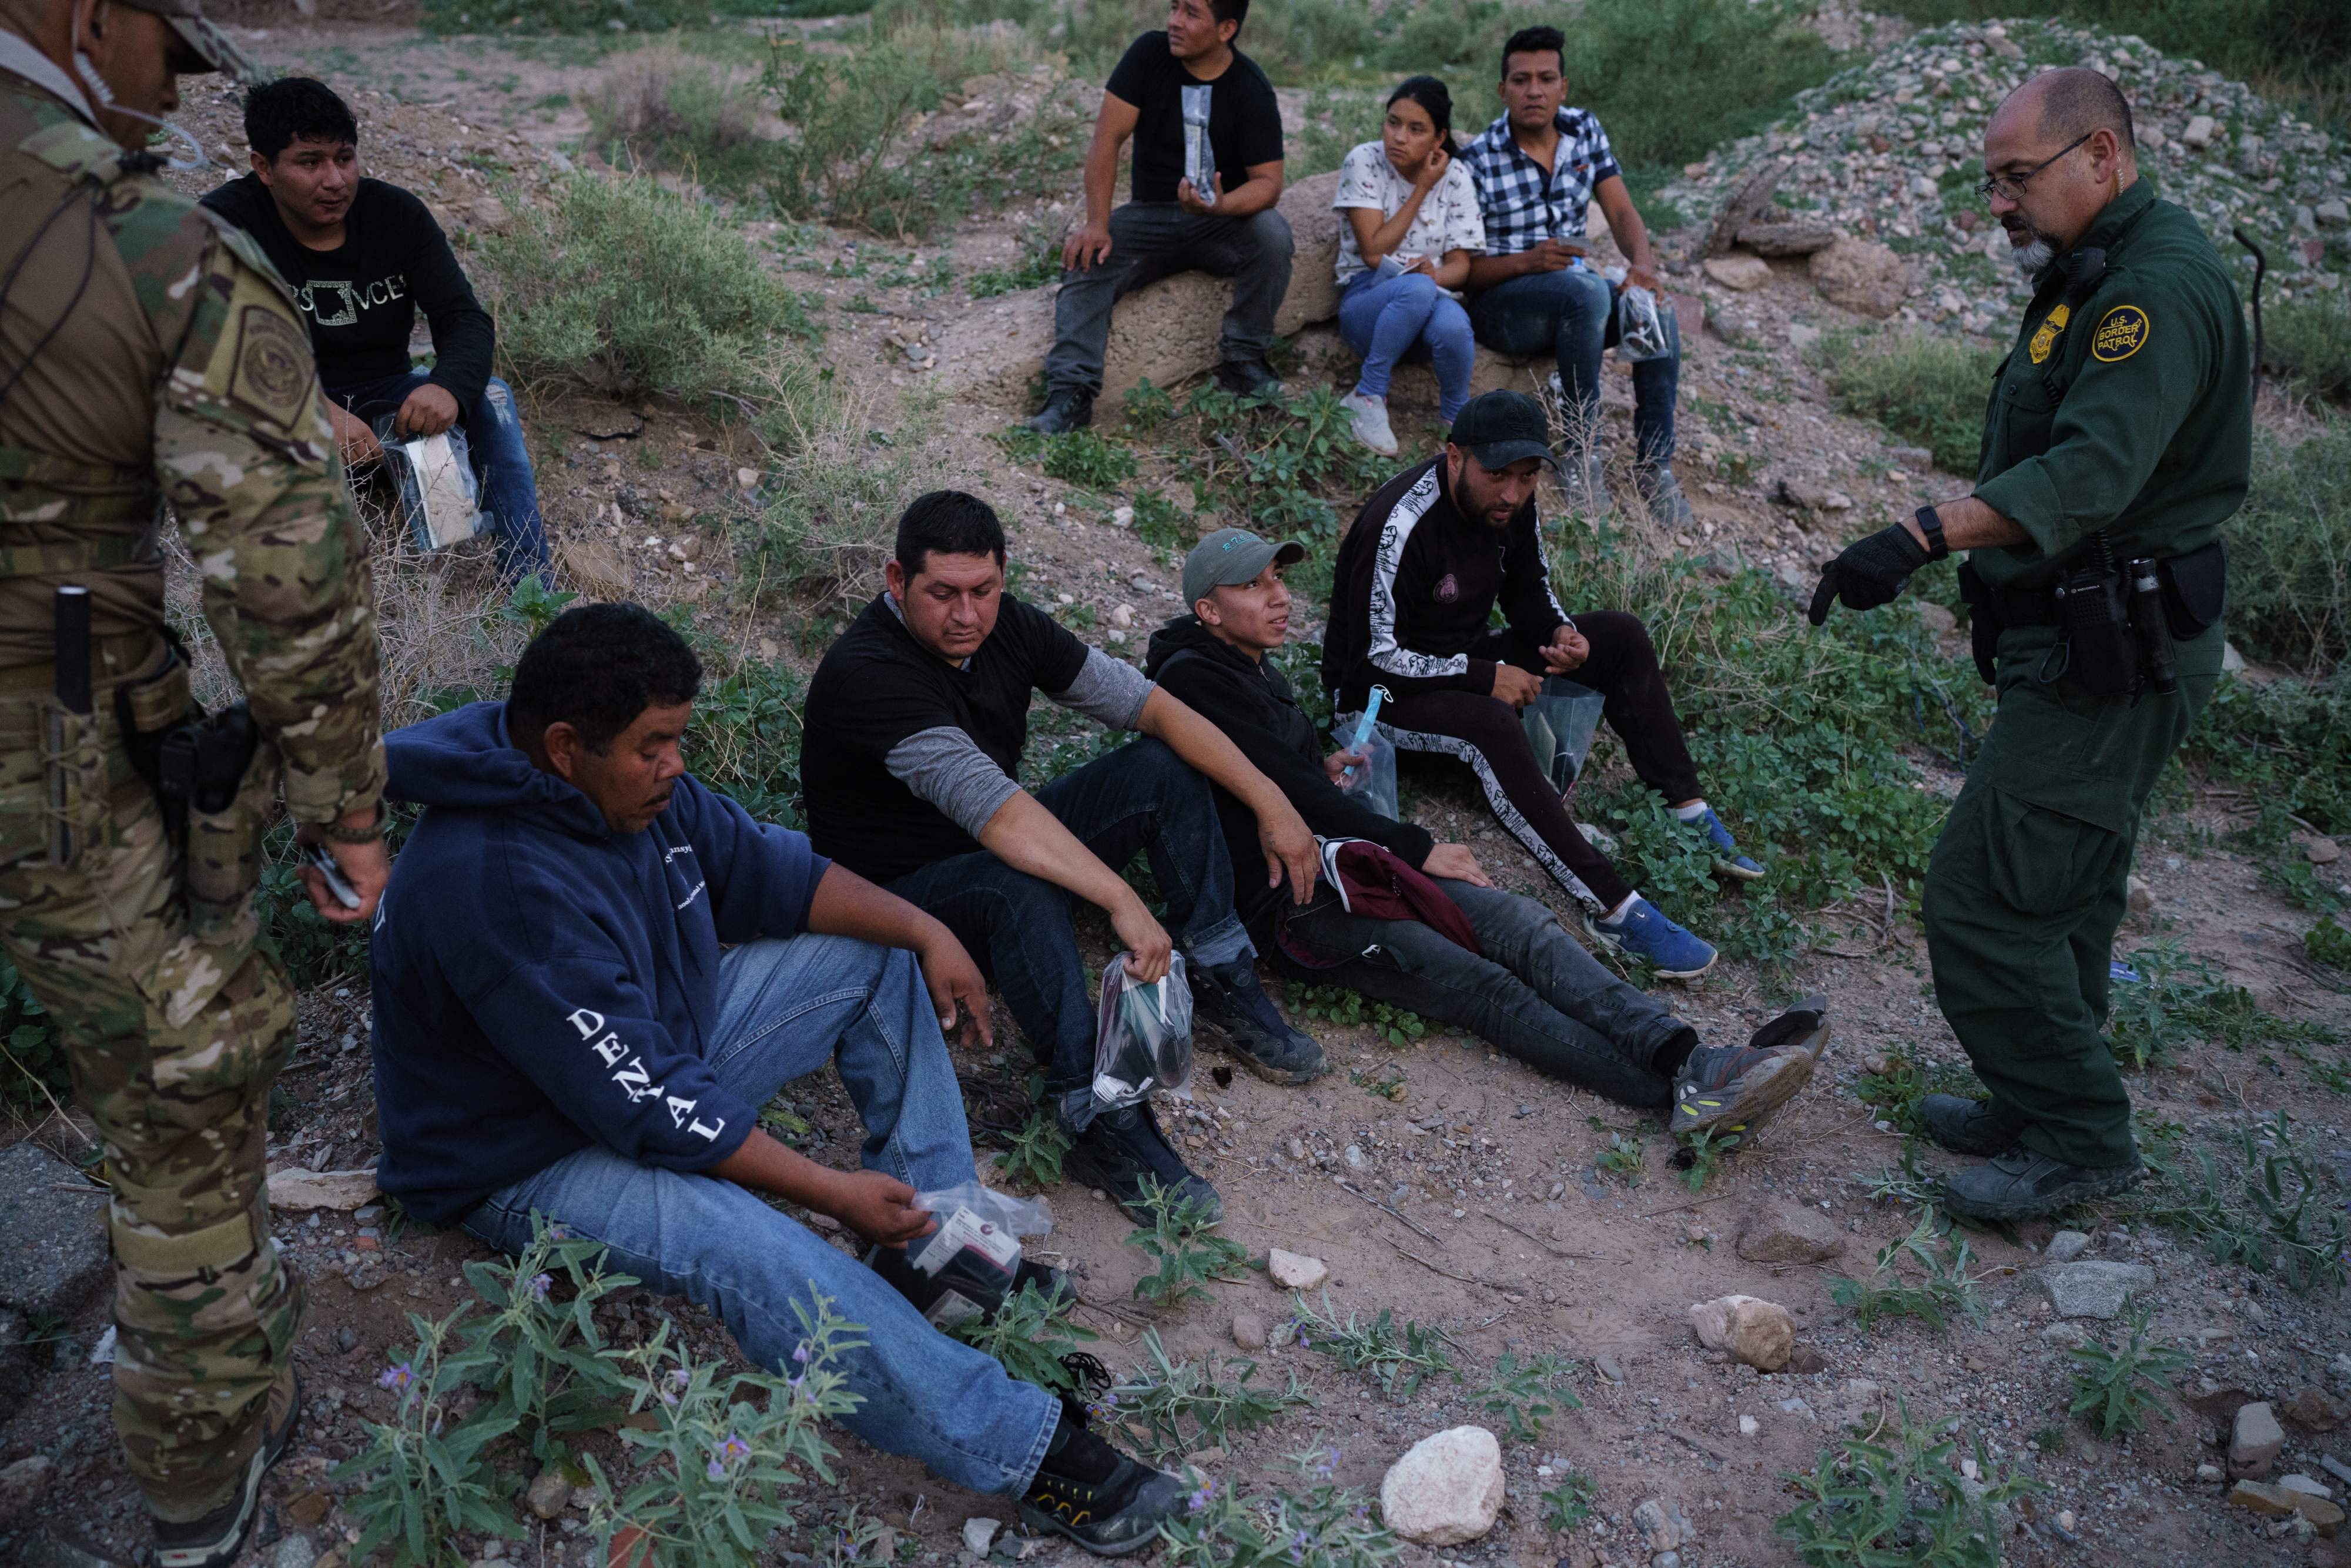 Agentes de la Patrulla Fronteriza arrestan a un grupo de migrantes en un área semi desértica de Nuevo México. (Foto Prensa Libre: AFP)